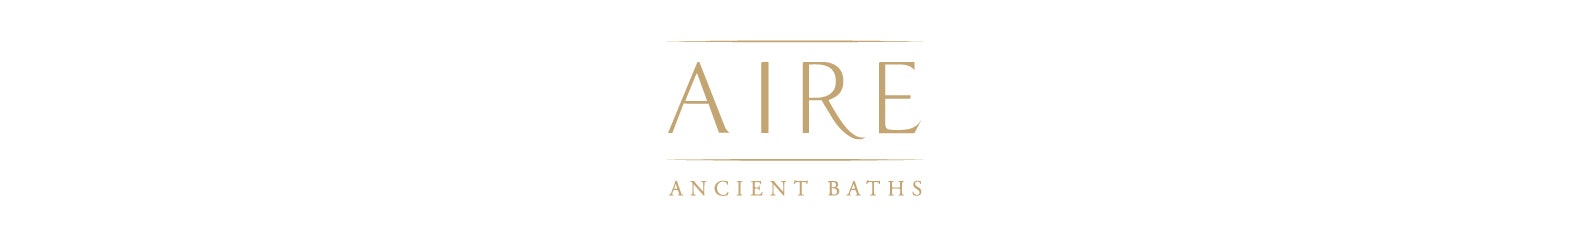 AIRE Ancient Baths 